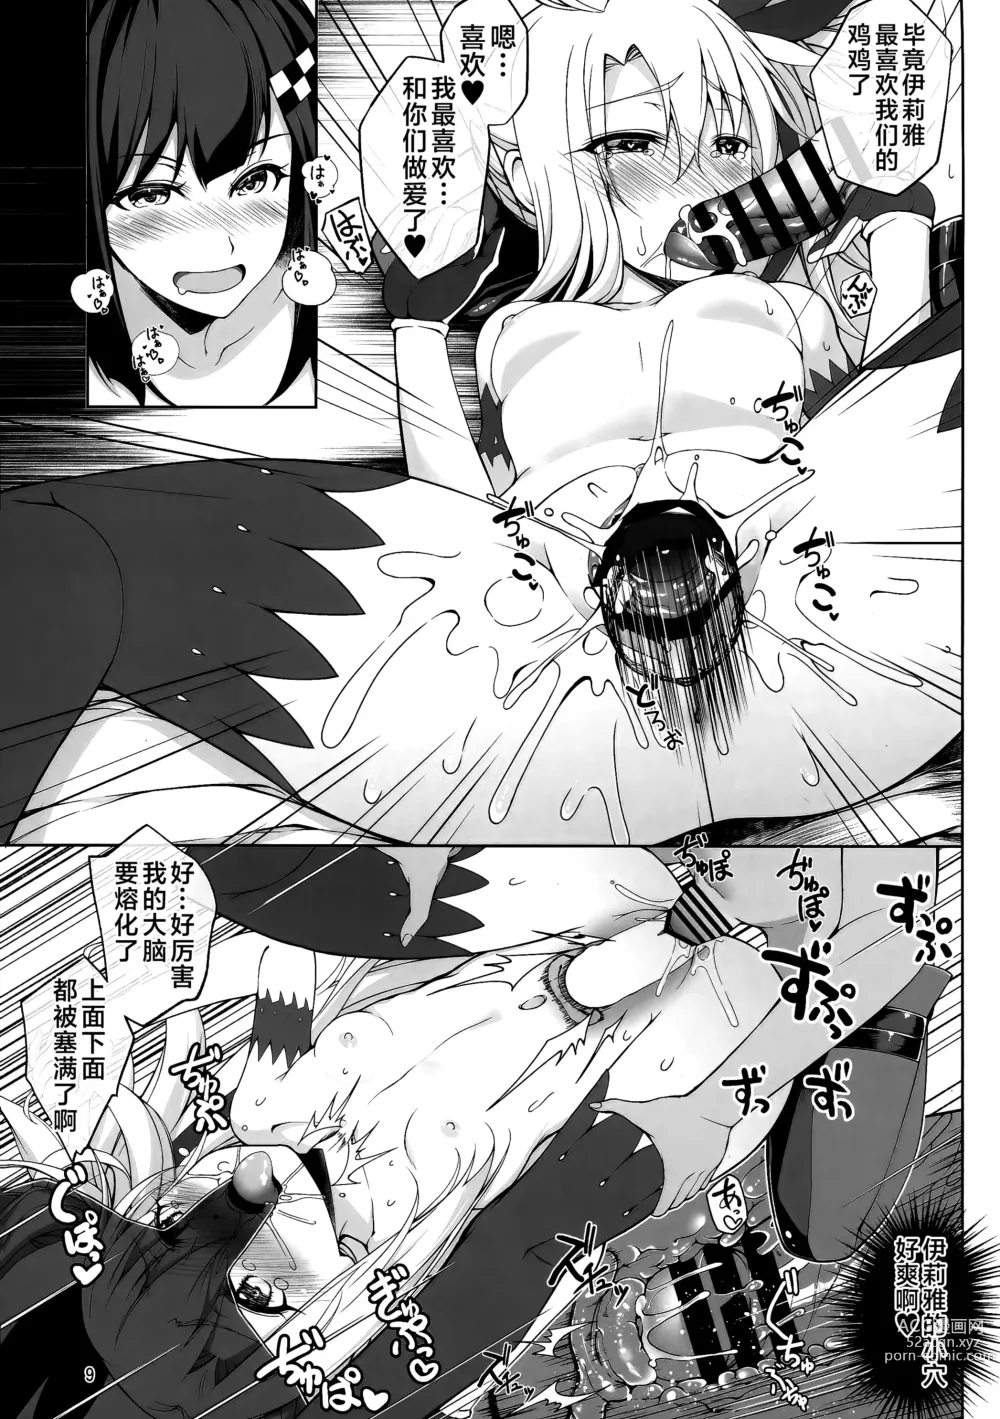 Page 9 of doujinshi SHG:08